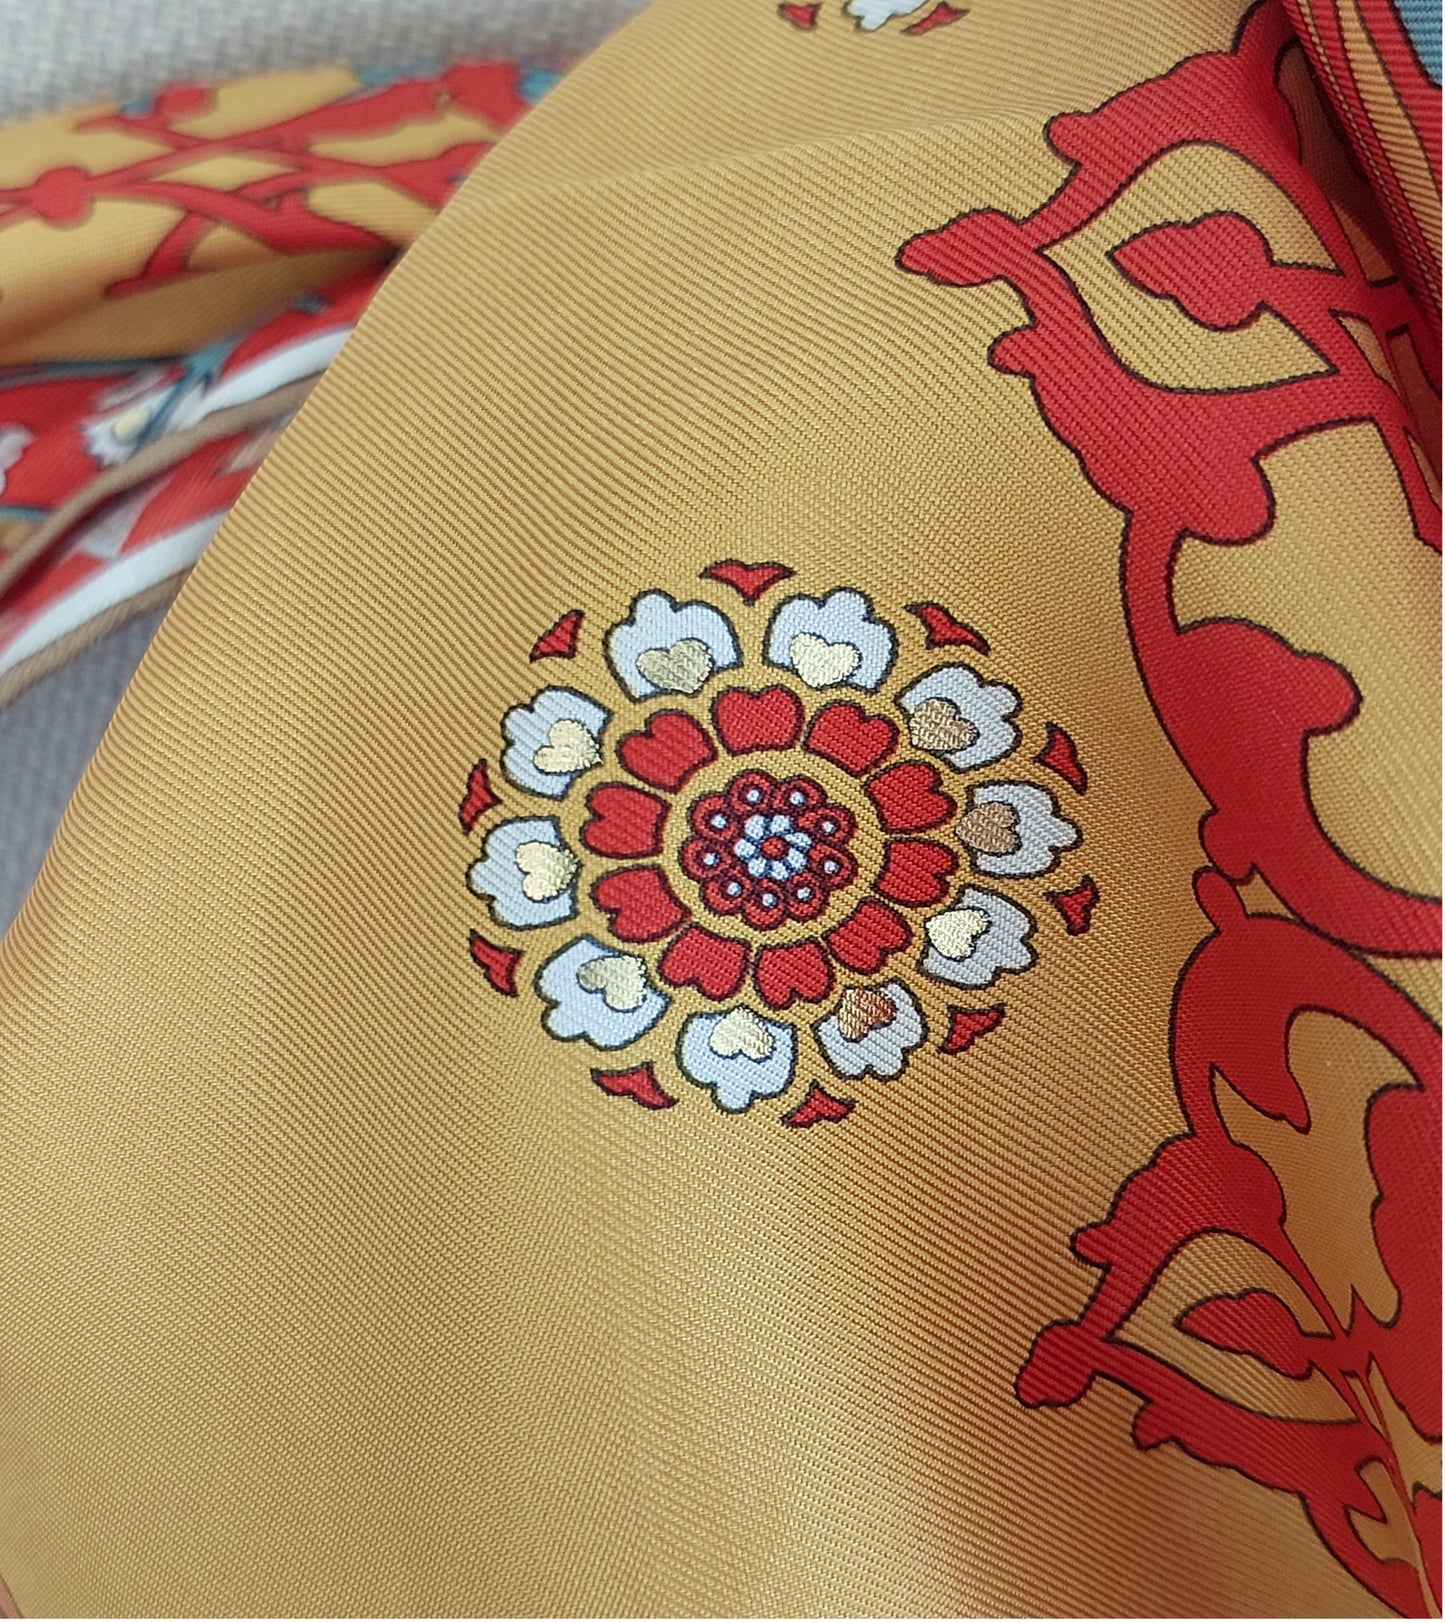 Pañuelo de Mujer Pre-loved Seda Vintage "Cuadrado de Palmas" en Colores Crema y Rojo Burdeos